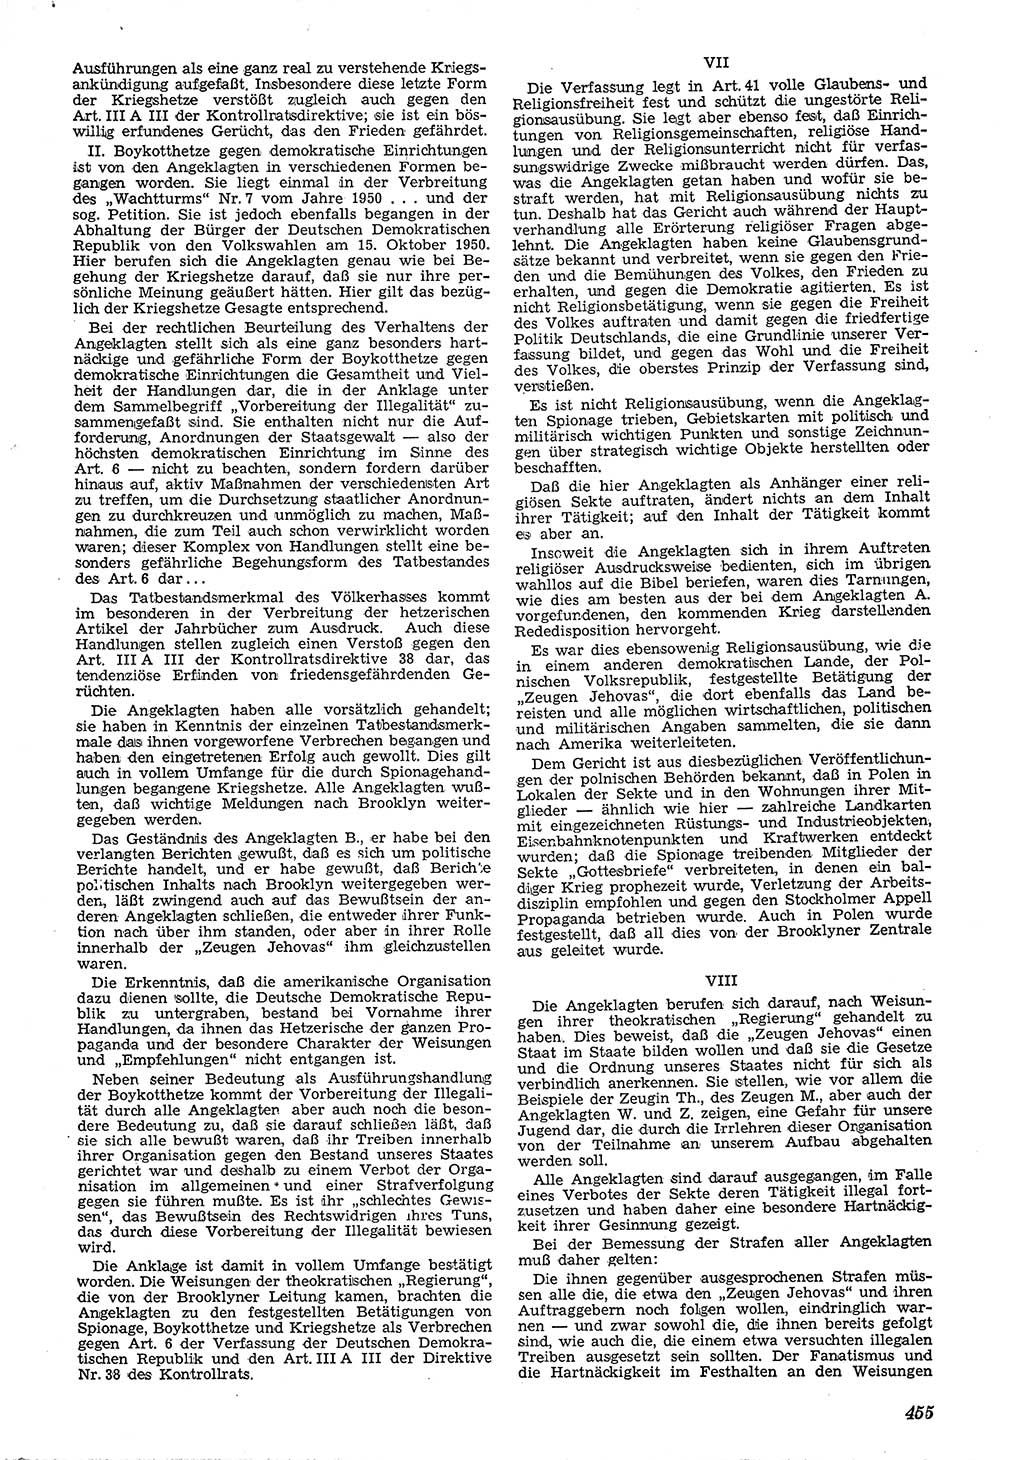 Neue Justiz (NJ), Zeitschrift für Recht und Rechtswissenschaft [Deutsche Demokratische Republik (DDR)], 4. Jahrgang 1950, Seite 455 (NJ DDR 1950, S. 455)